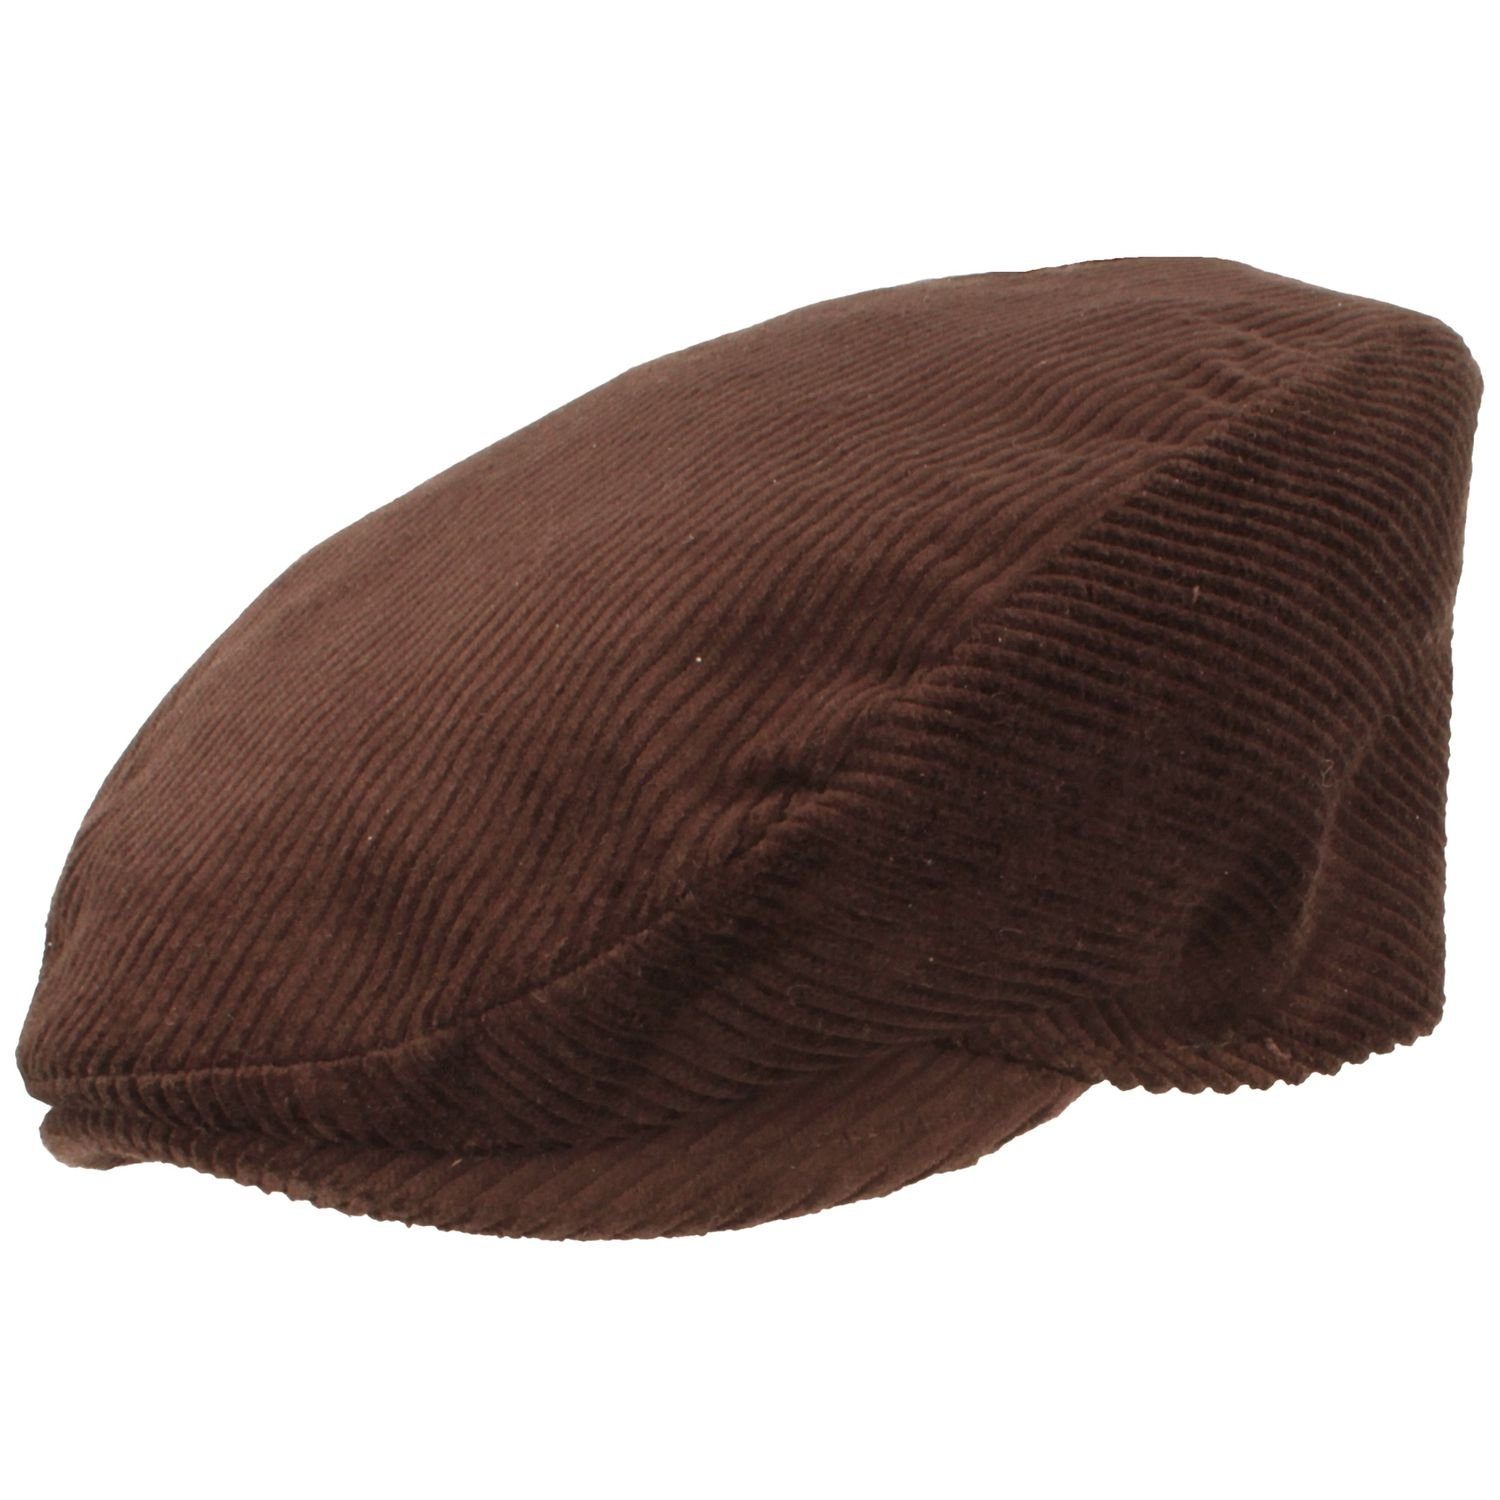 Breiter Schiebermütze Flatcap aus Baumwolle mit Cord-Streifen braun